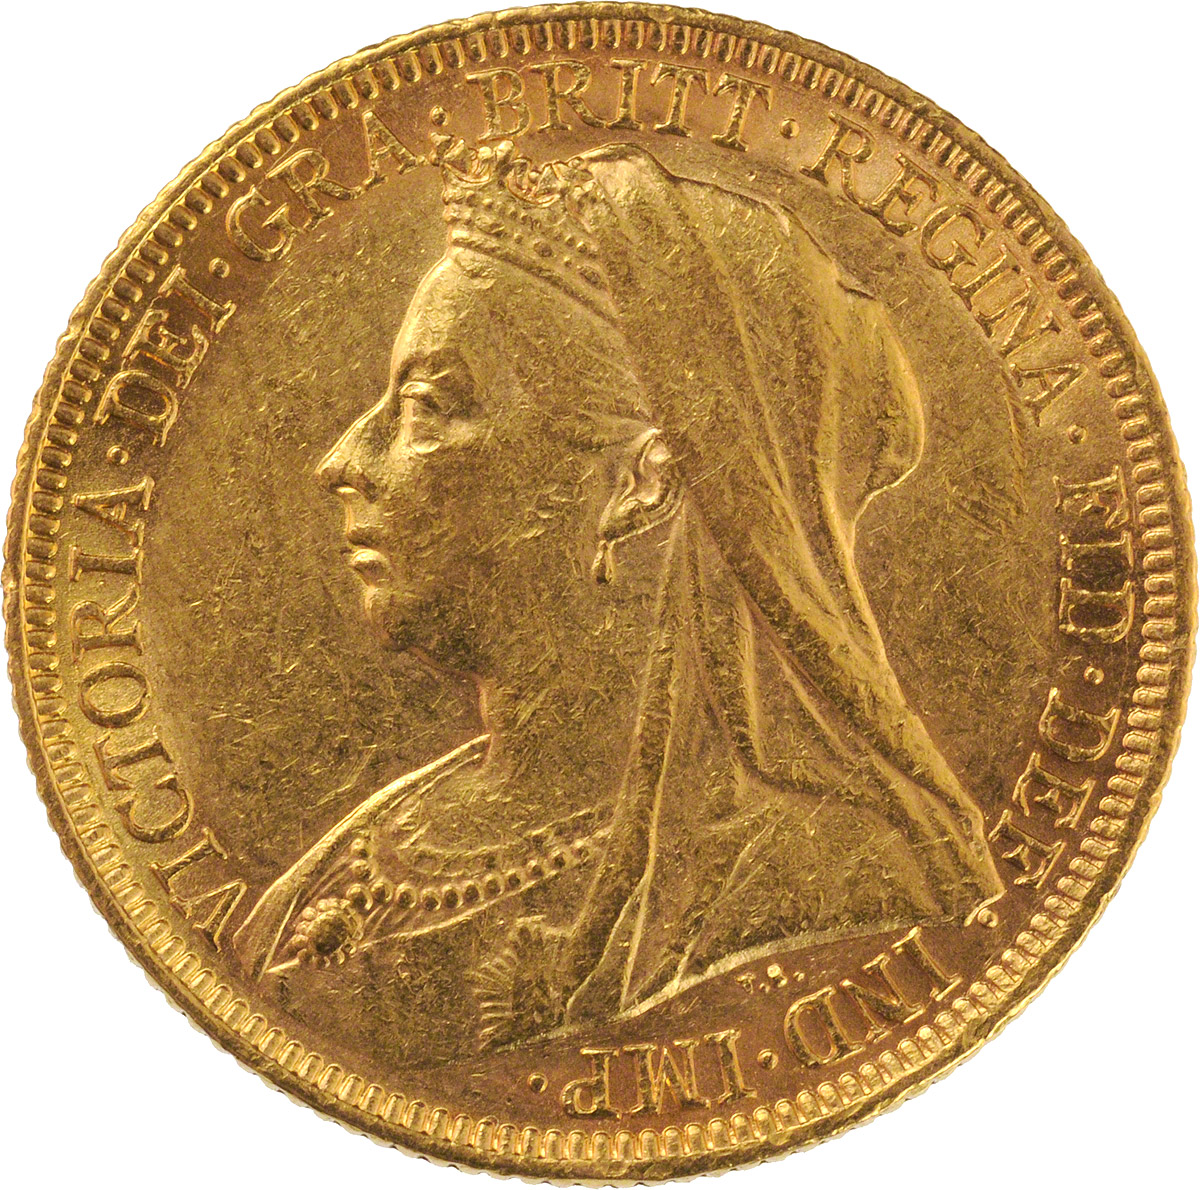 1896 Βικτώρια (Νομισματοκοπείο Σίδνεϊ)